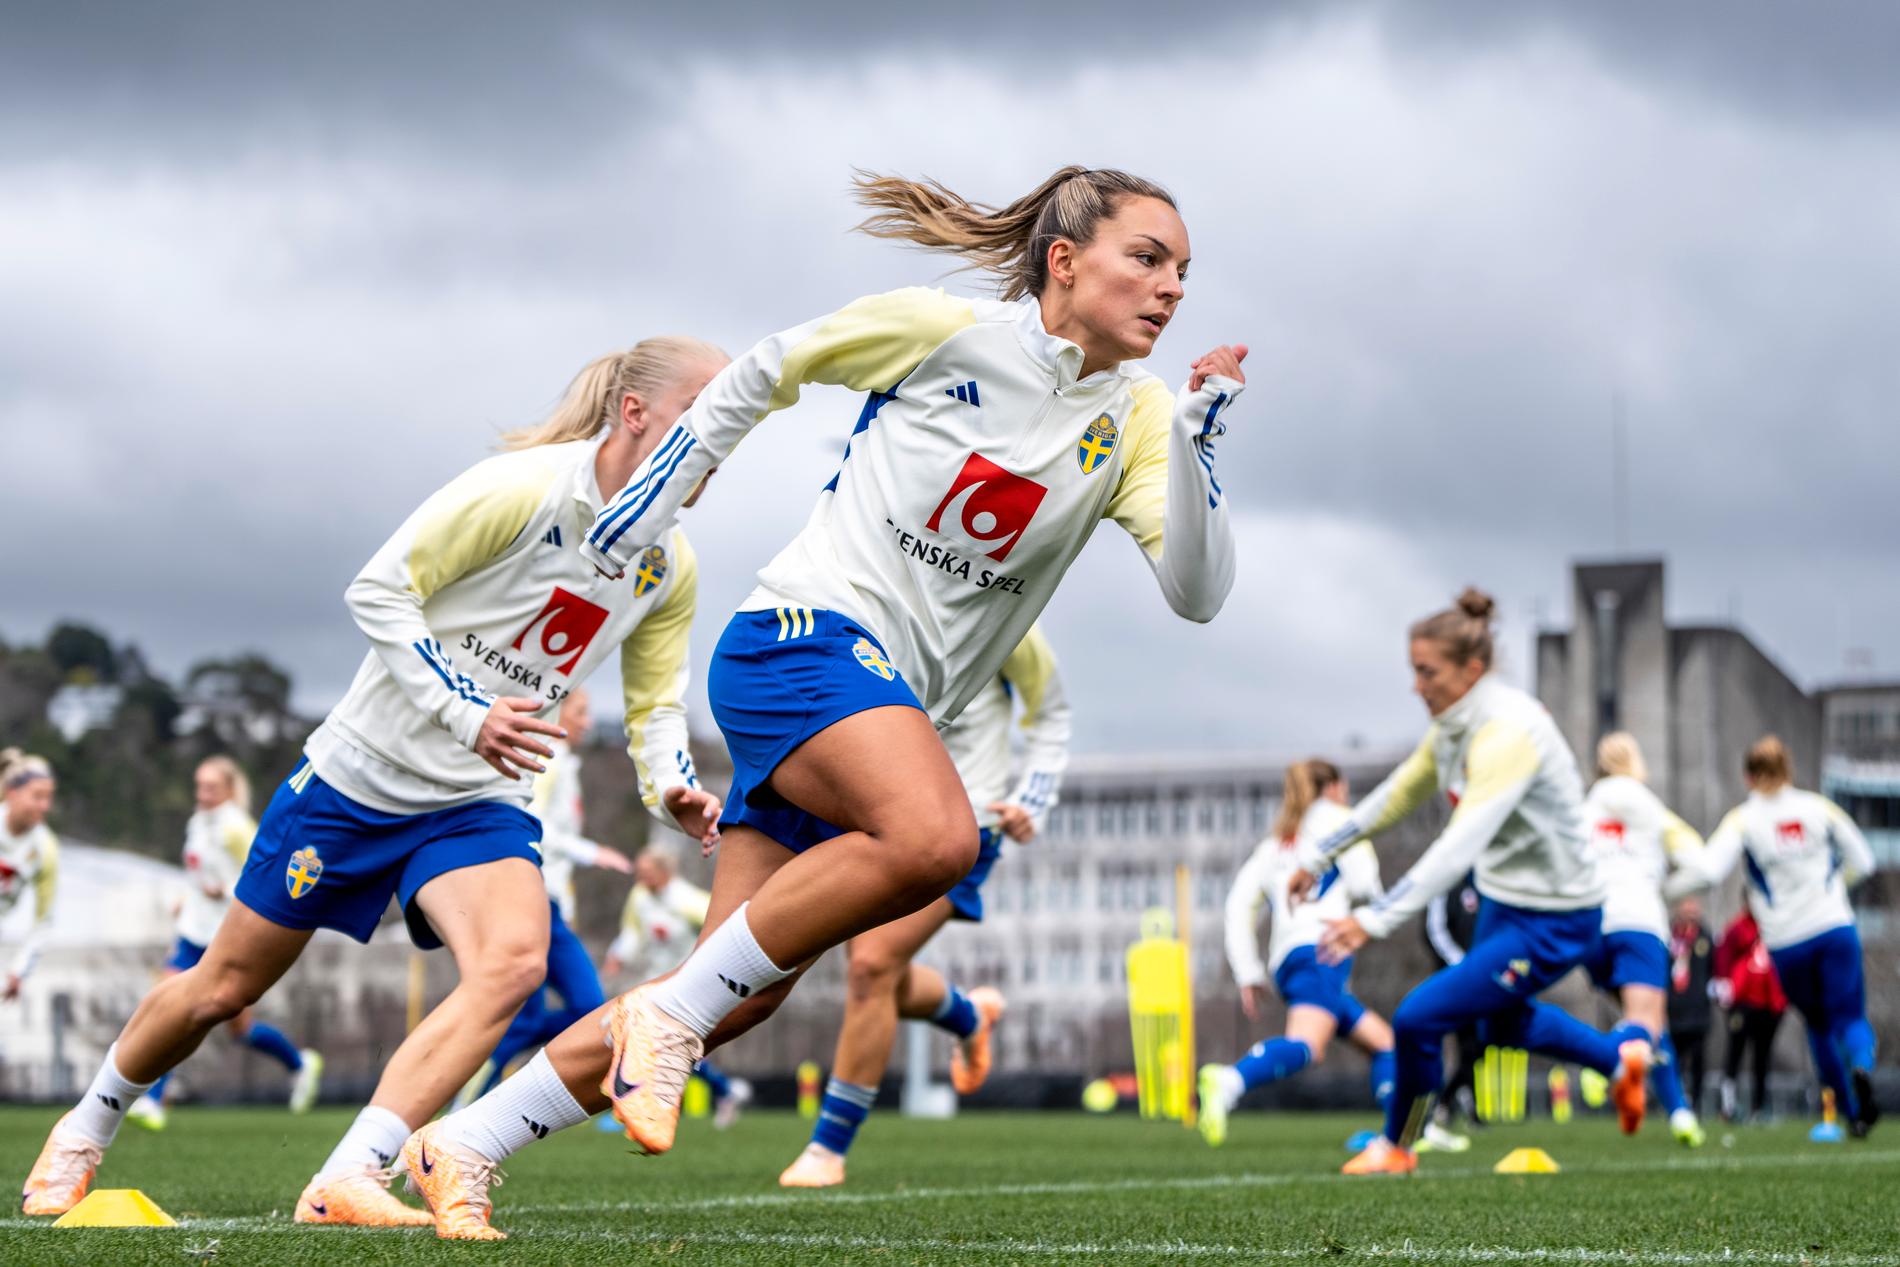  Det svenska landslaget i fotboll tränar inför VM på Nya Zeeland.